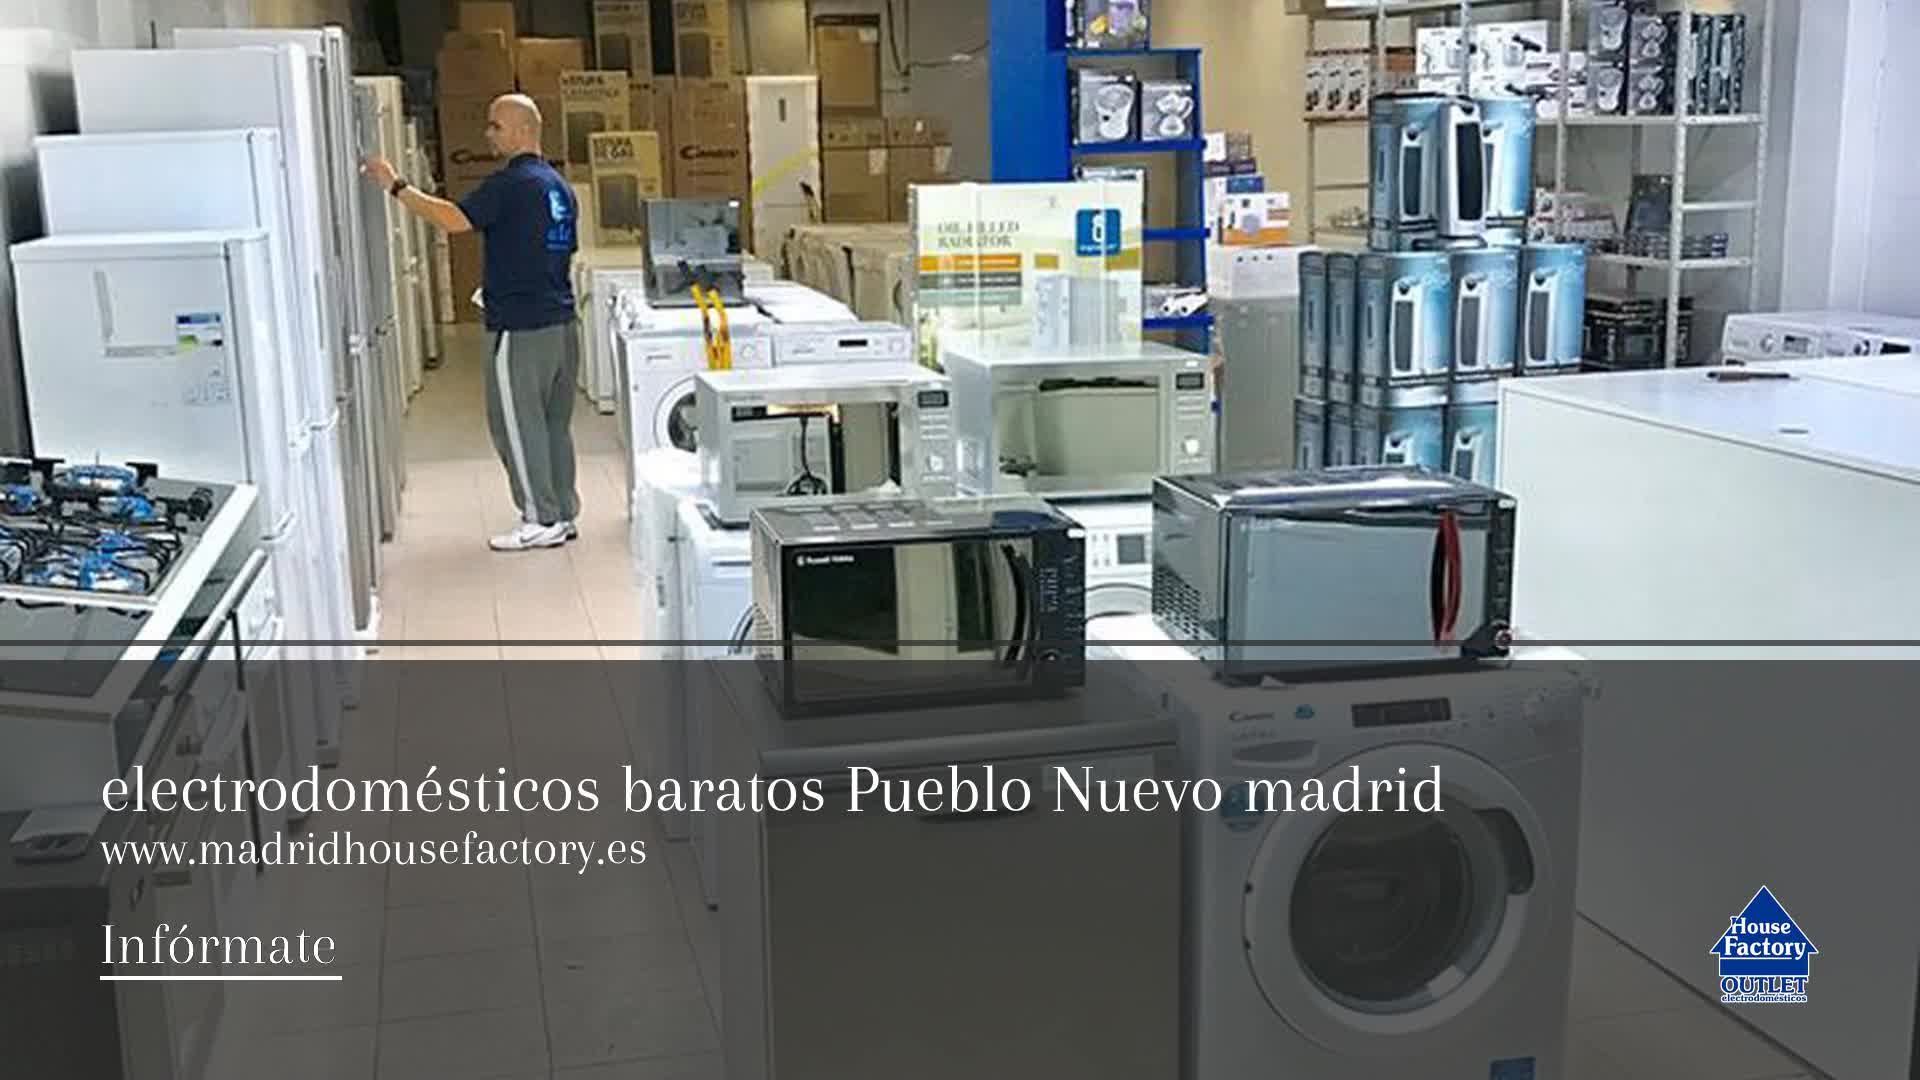 Mala fe Continental dos Electrodomésticos baratos en Pueblo Nuevo, Madrid: House Factory